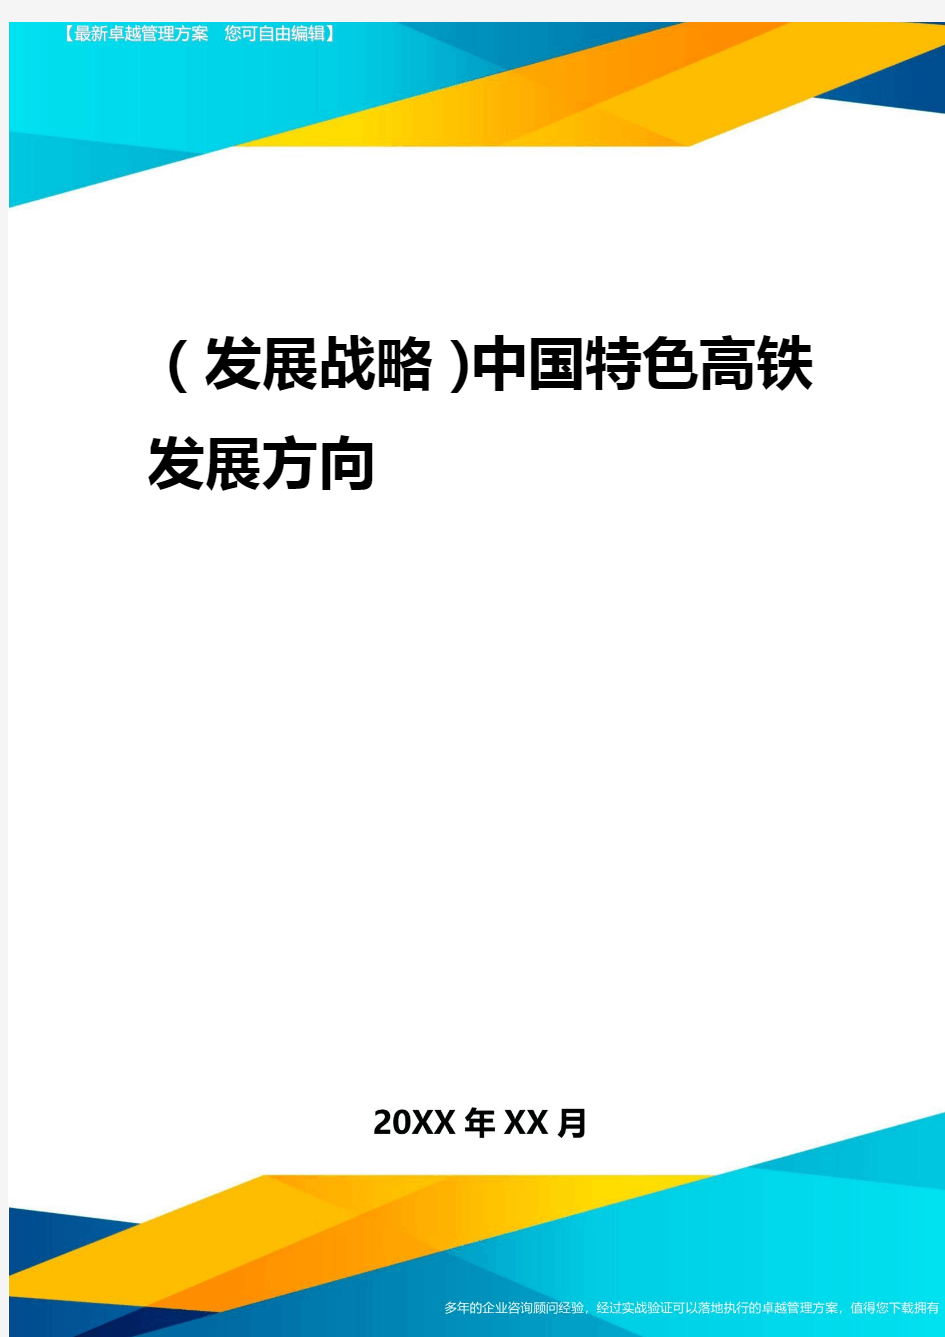 2020年(发展战略)中国特色高铁发展方向